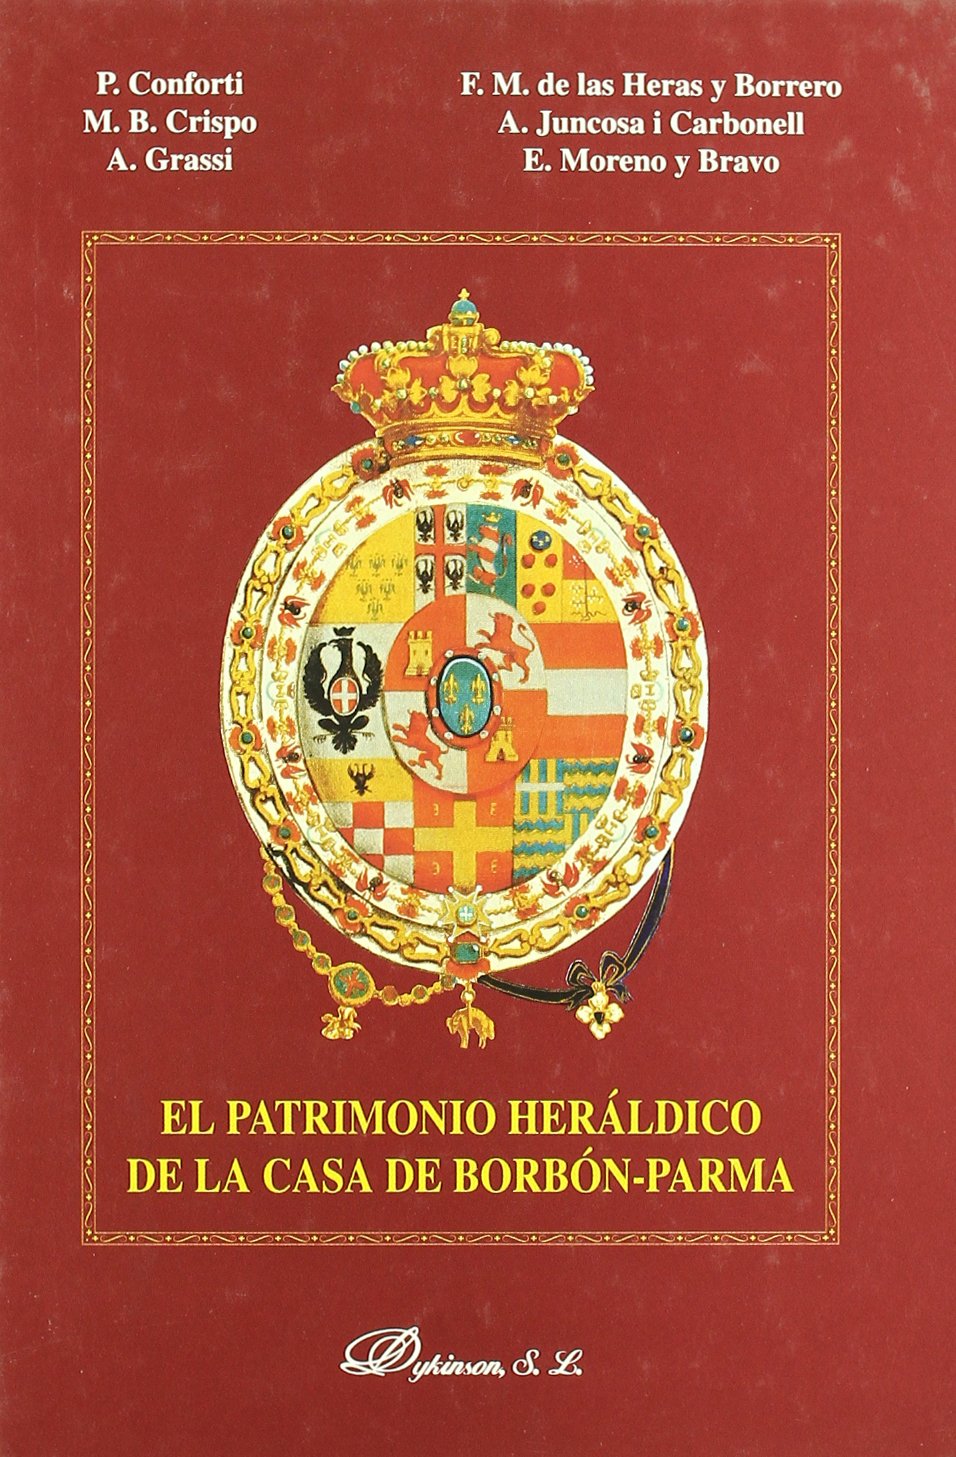 El patrimonio heráldico de la Casa Borbón-Parma